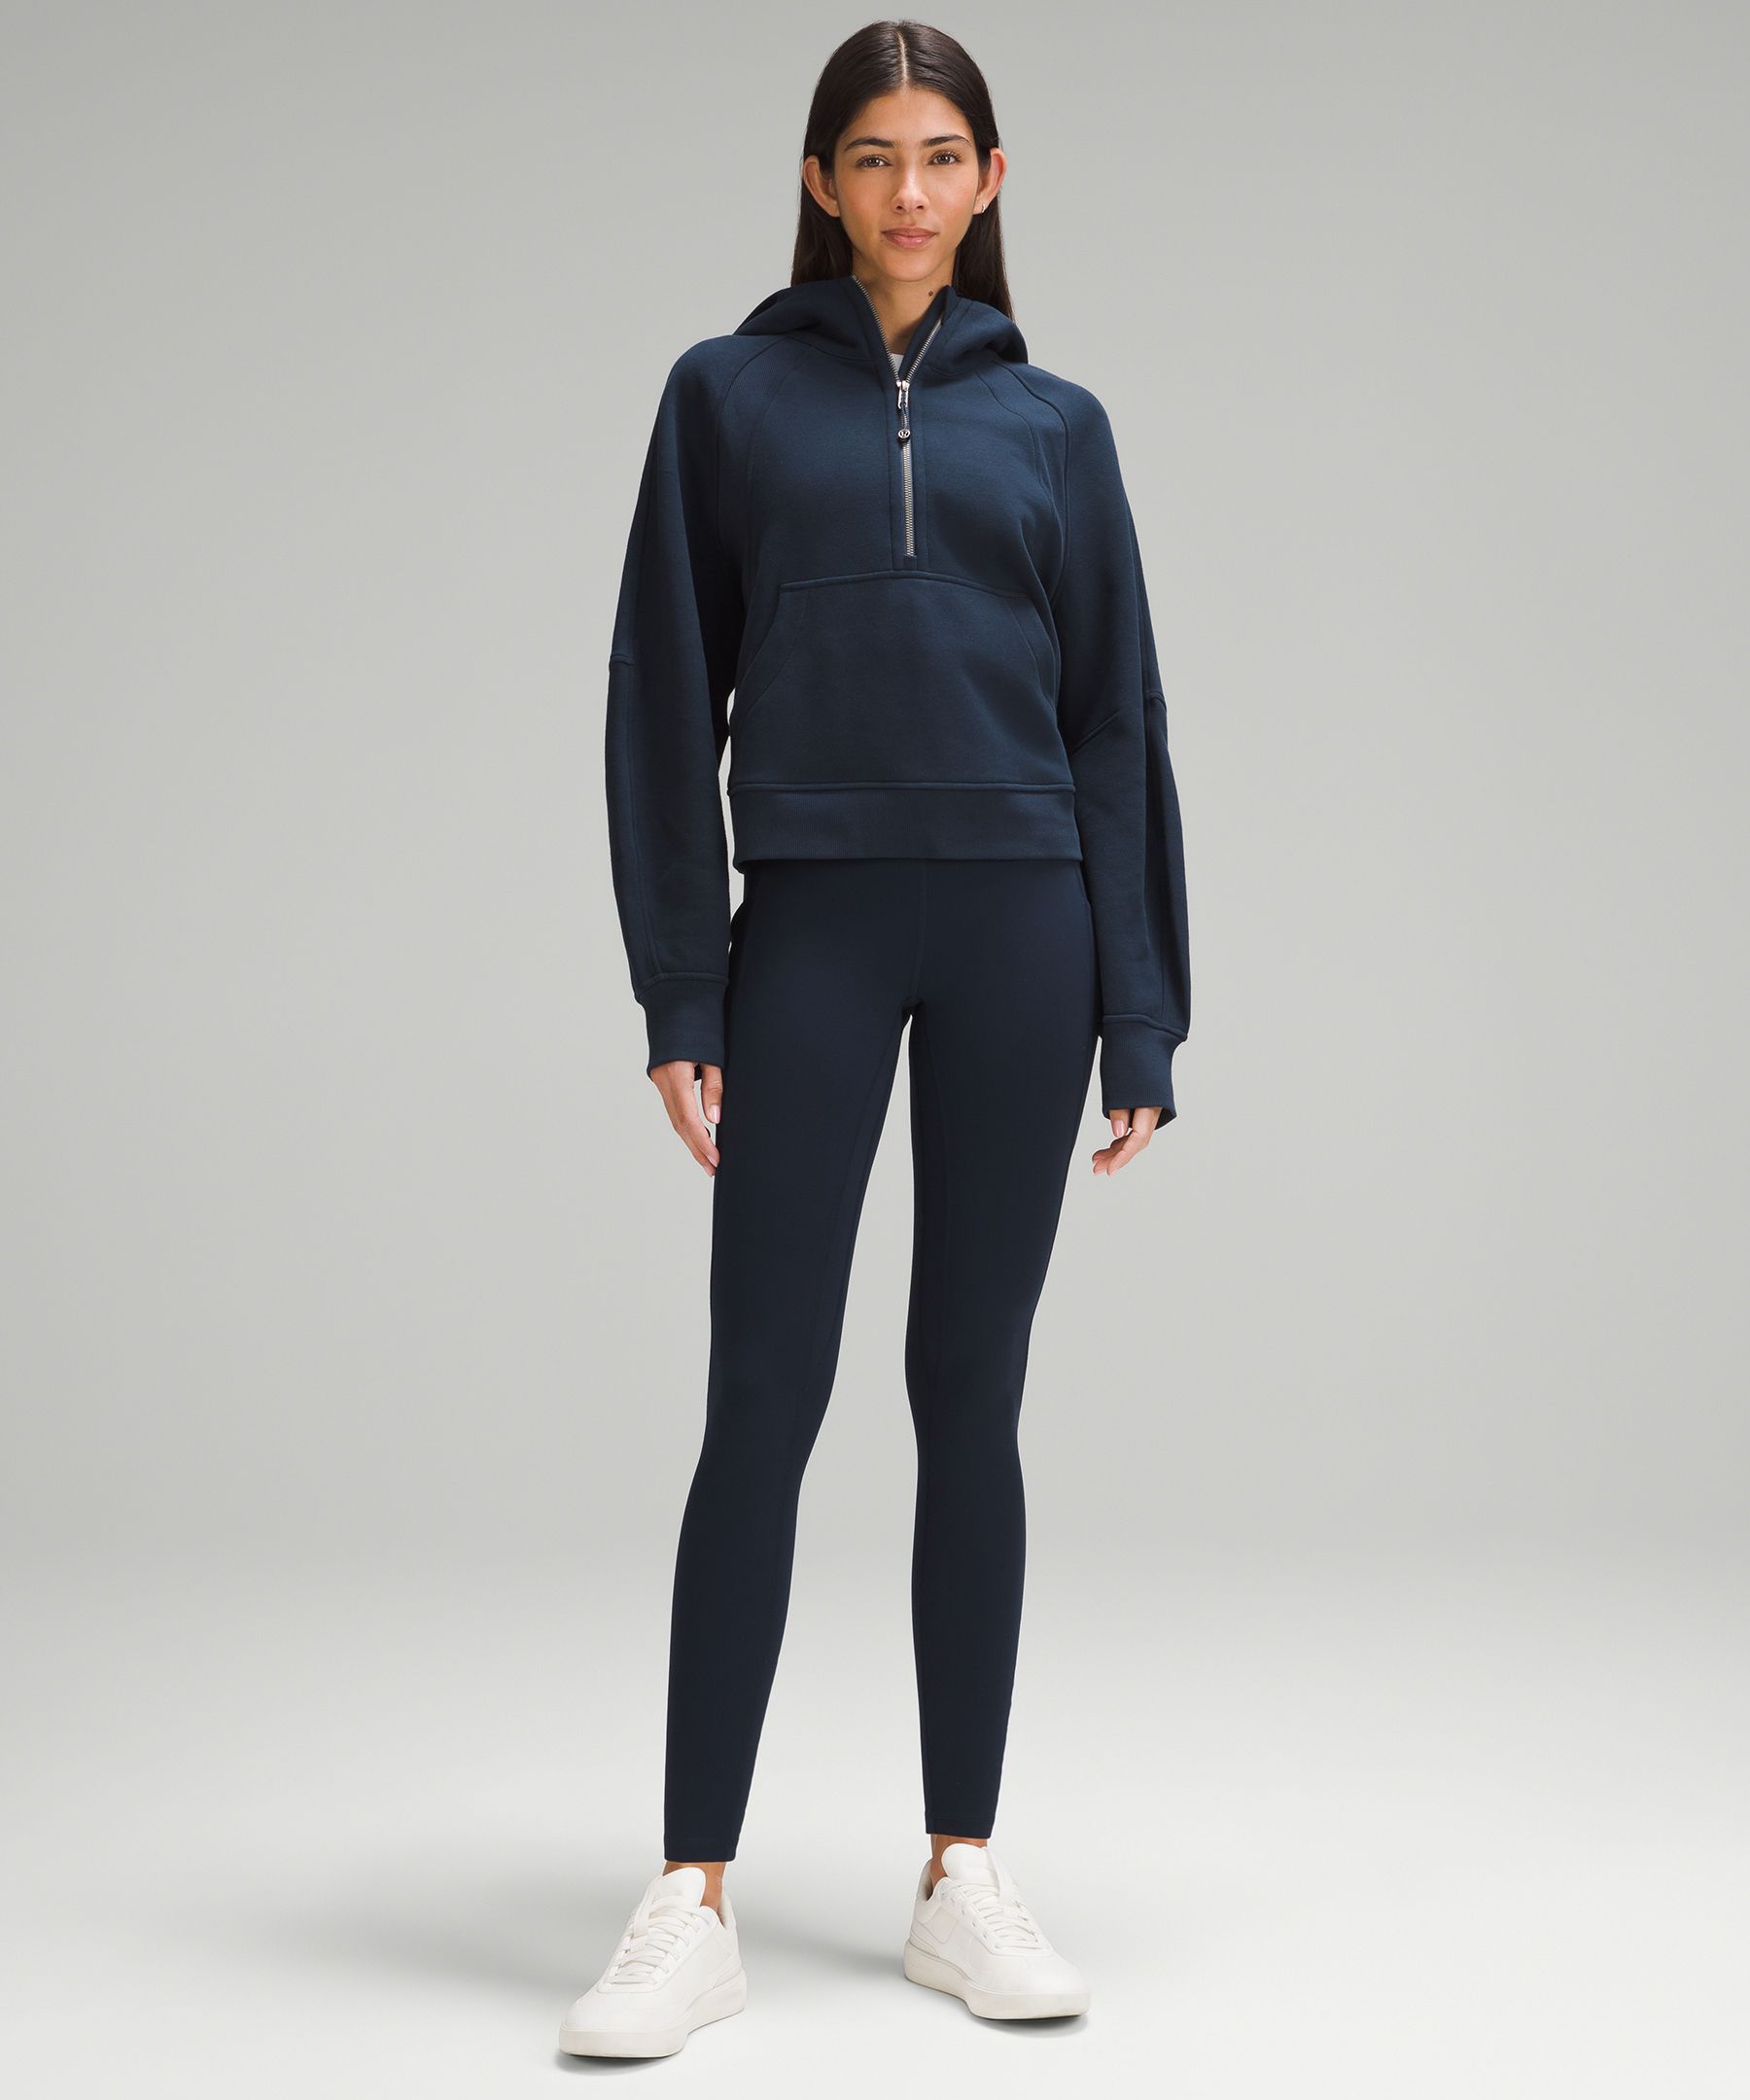 Lululemon Black & Gray Yoga Pants Full Length Leggings Size 4 - $21 (77%  Off Retail) - From Allison